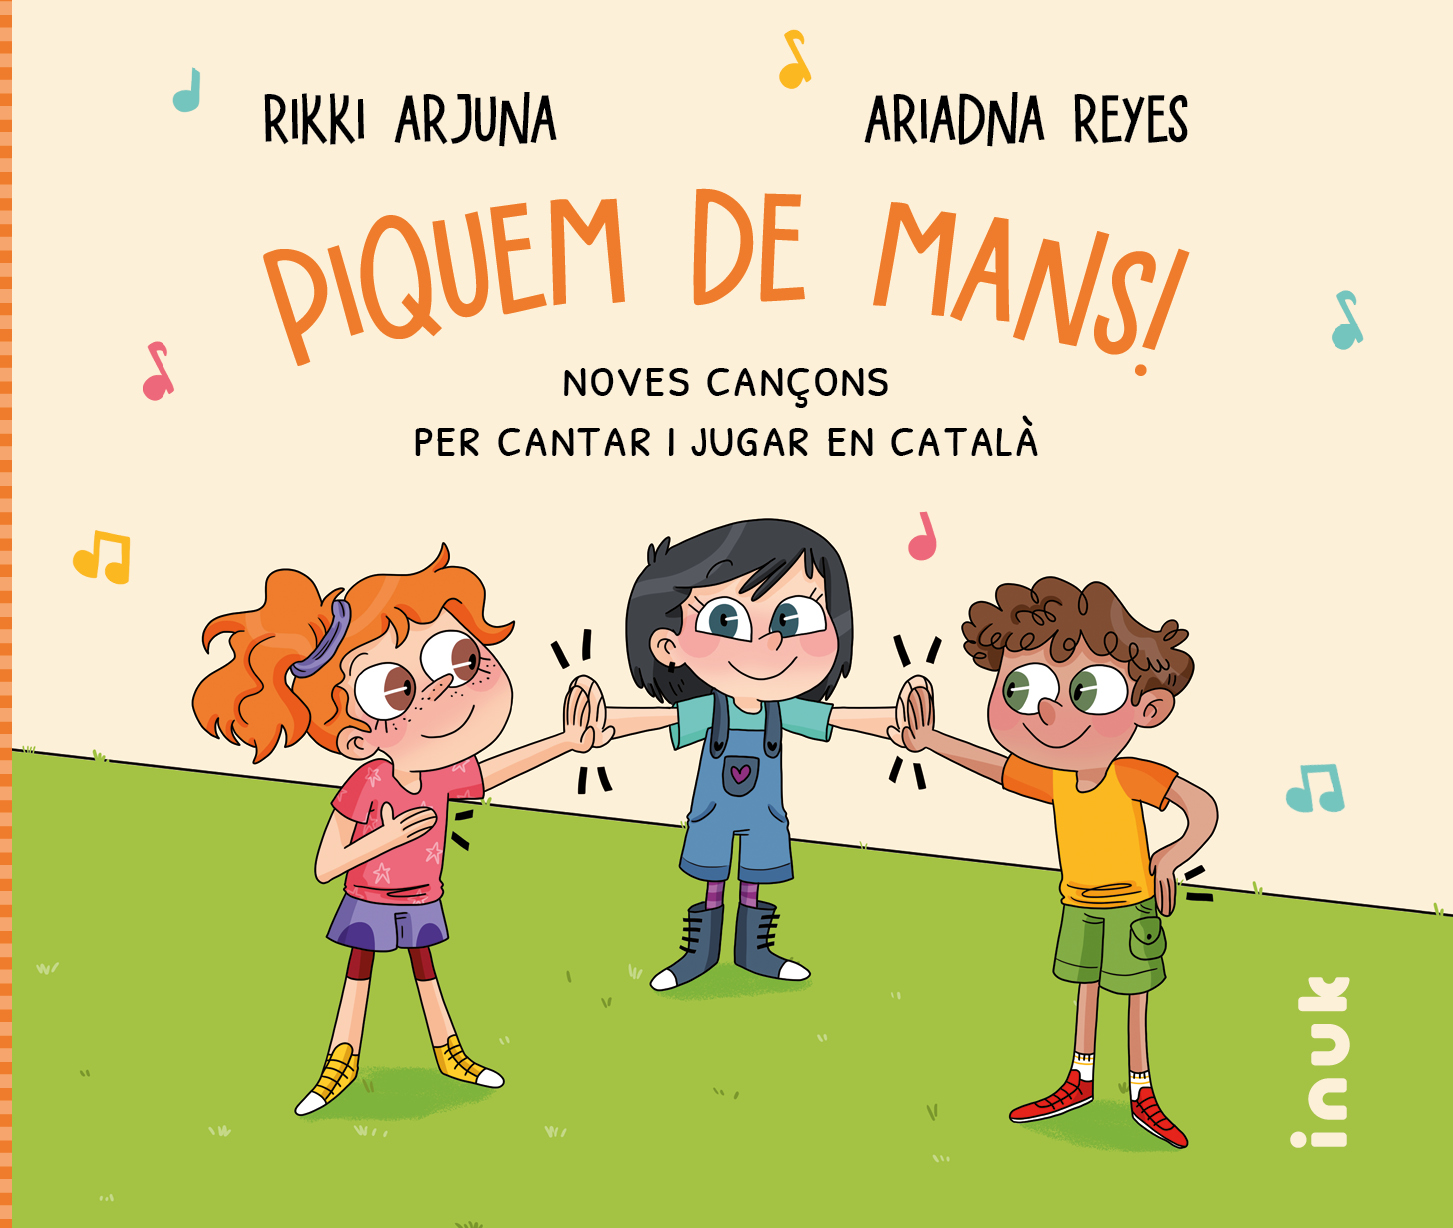 Piquem de mans! Noves cançons per cantar i jugar en català